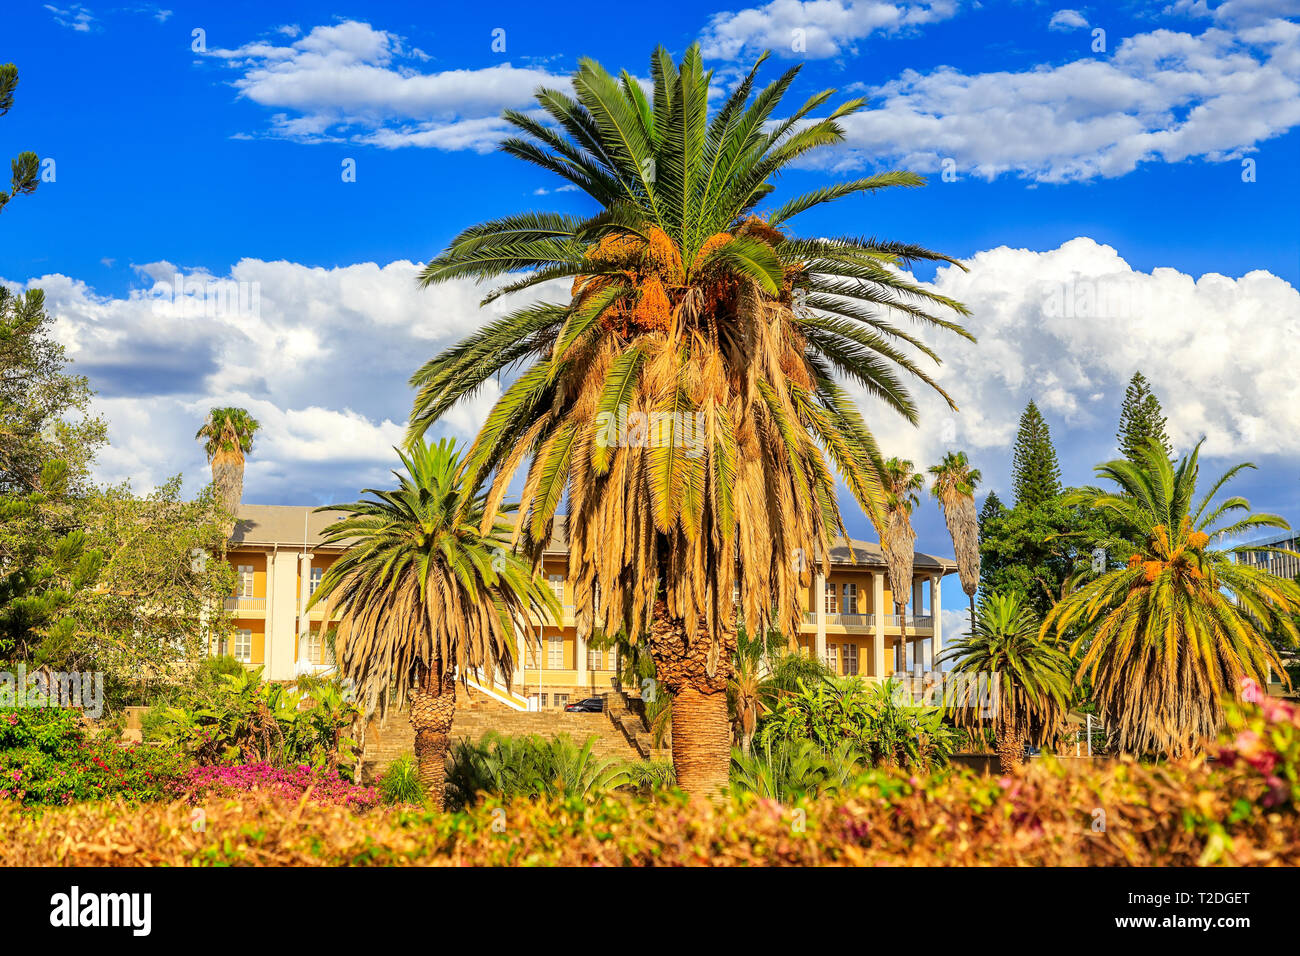 Parc et jardin avec bâtiment Palais jaune caché derrière de grands palmiers, Windhoek, Namibie Banque D'Images